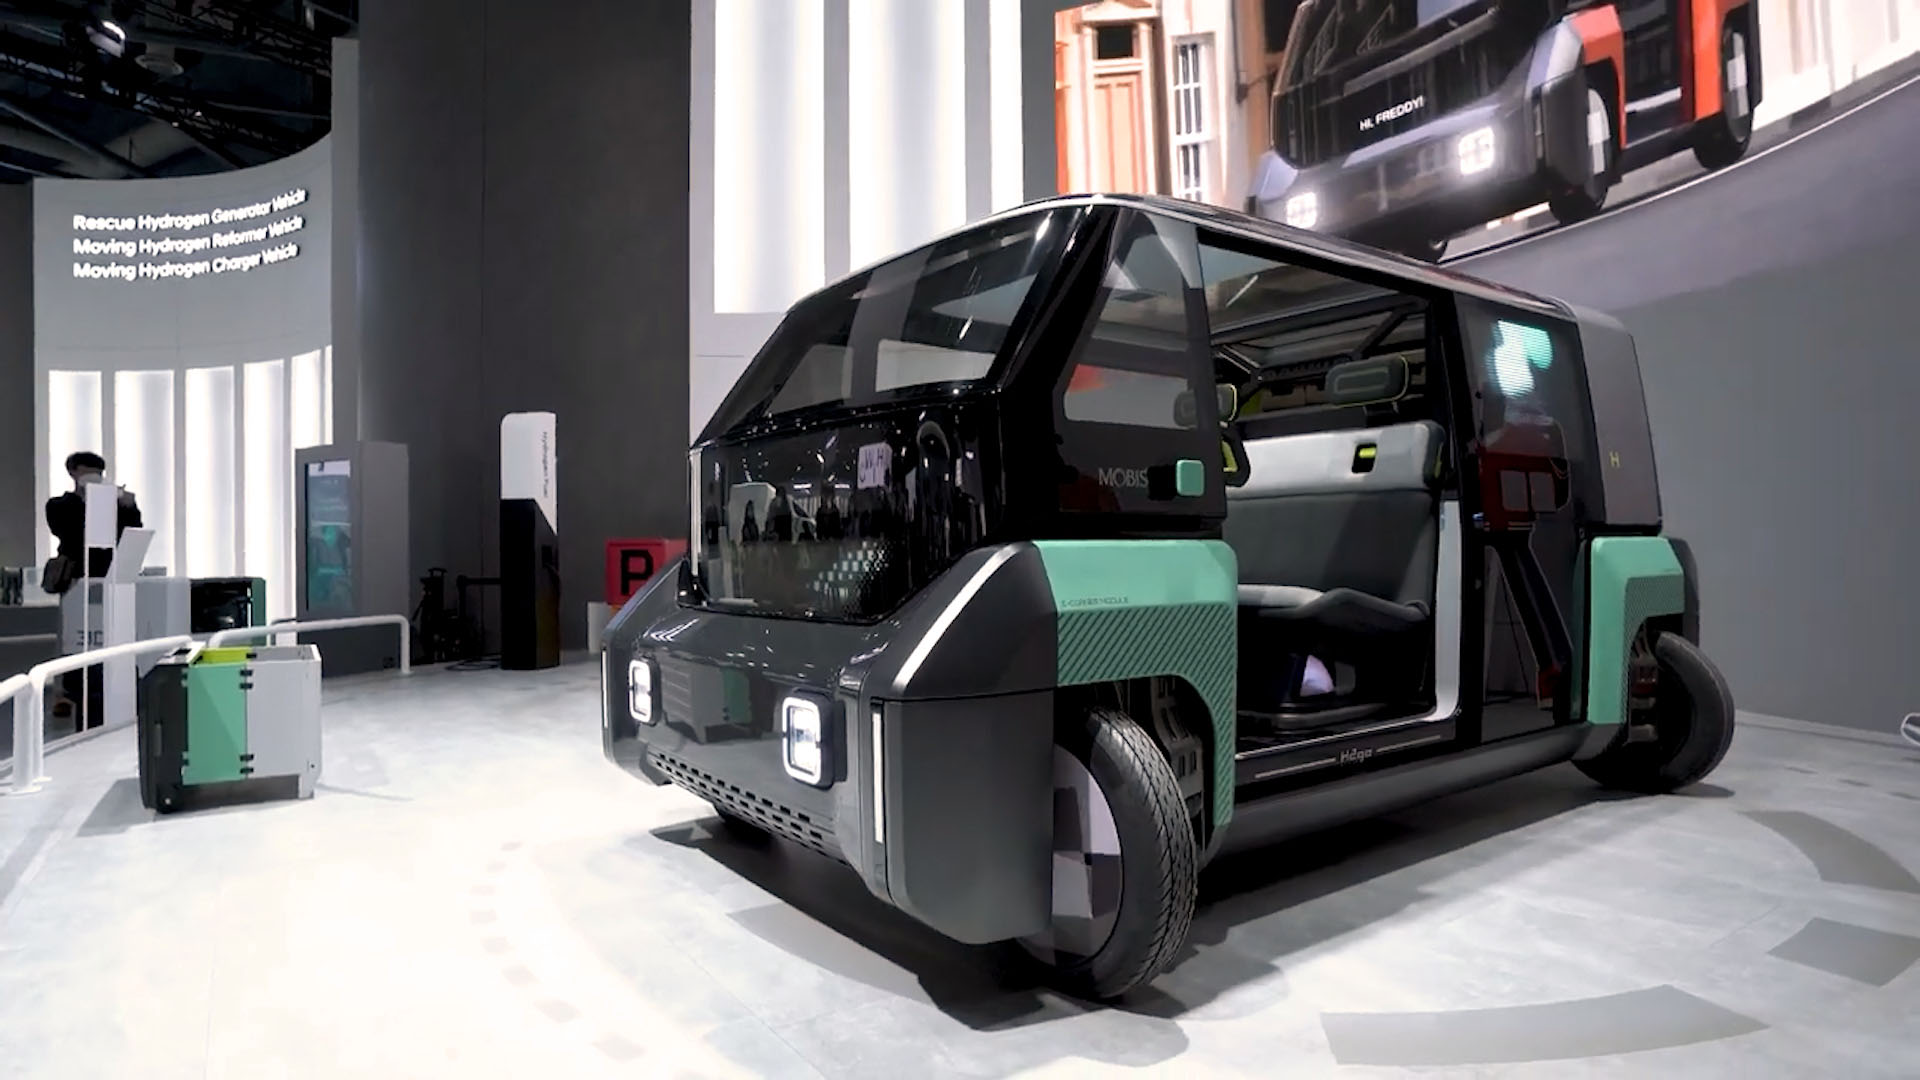 El prototipo presentado en el CES Las Vegas 2021 estaba basado en un vehículo multipropósito